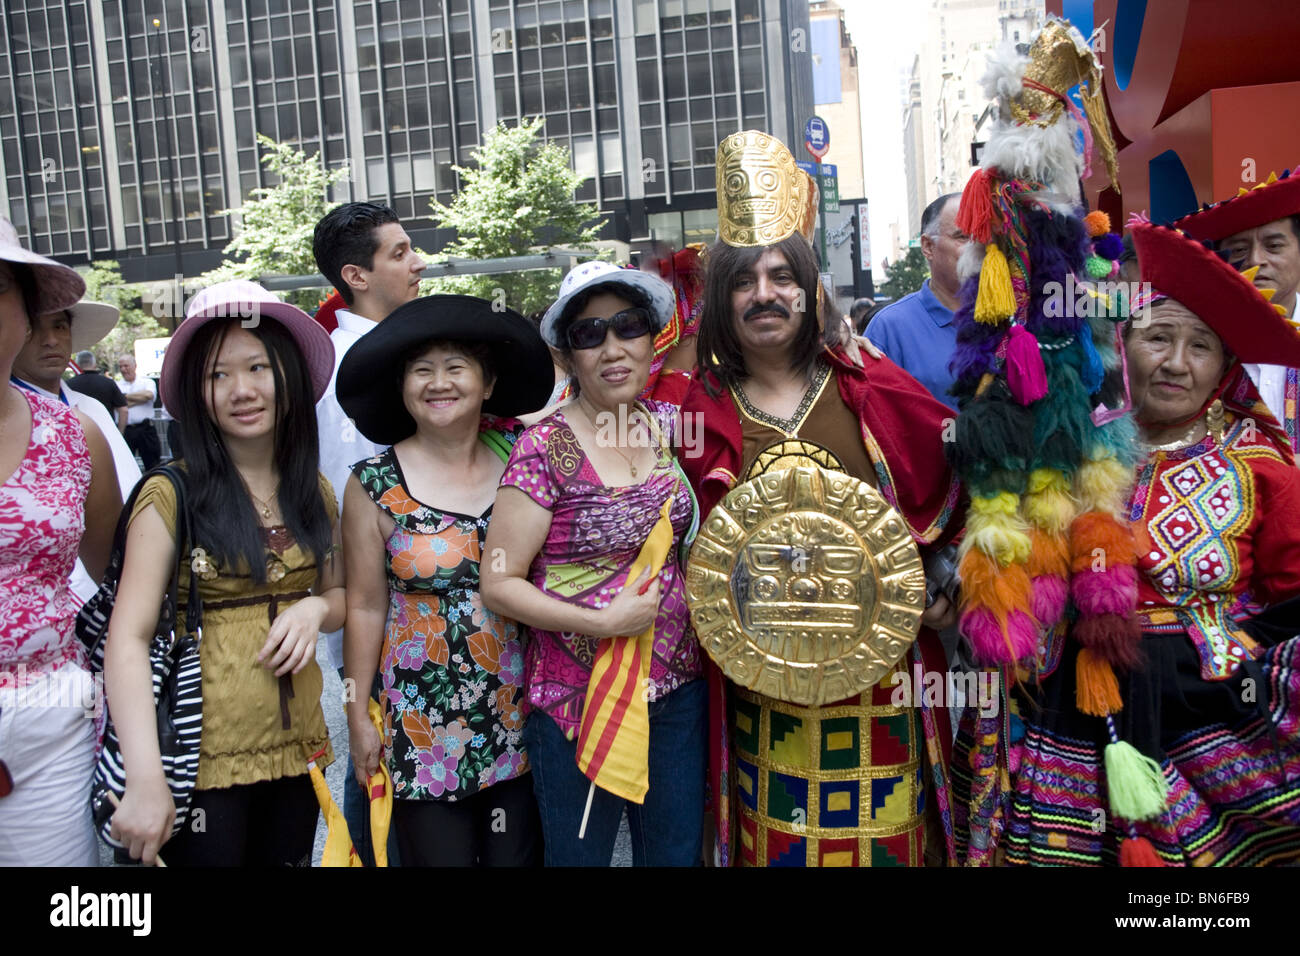 Internationalen Einwanderer Parade, New York: Portrait of Peruvian (R) und vietnamesische (L) Einwanderer in der 6th Avenue in New York City. Stockfoto